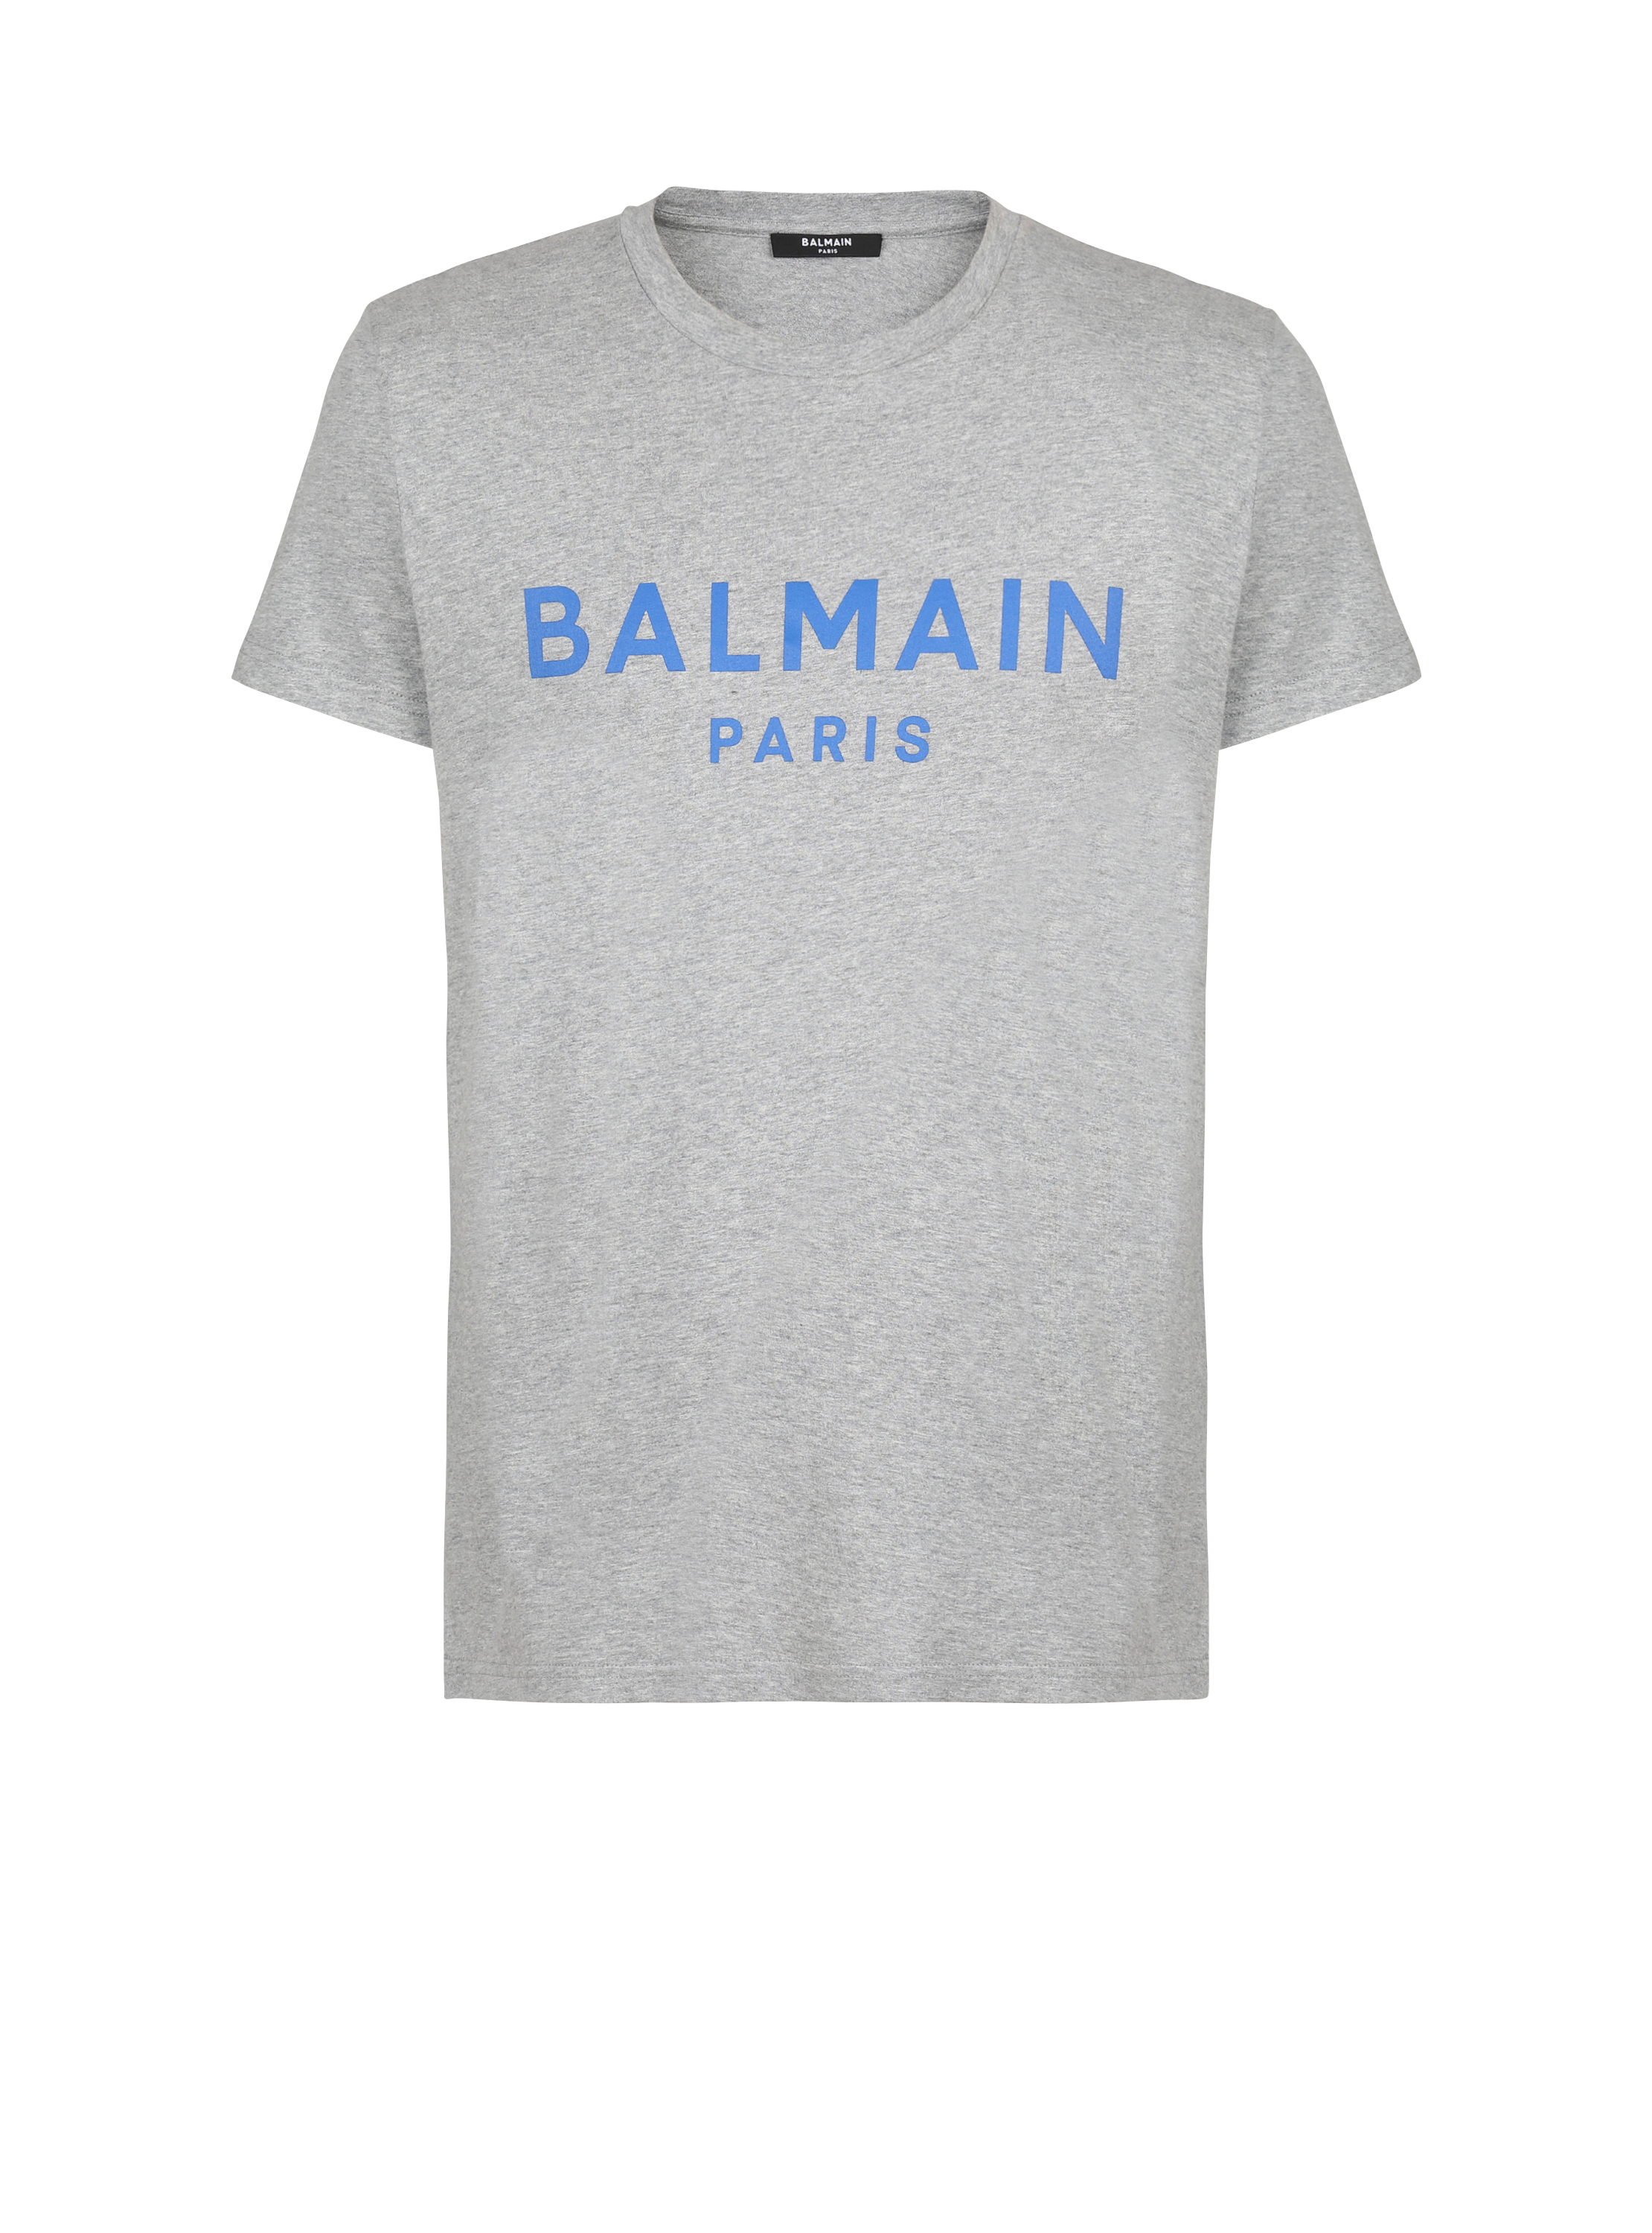 T-shirt in cotone con logo Balmain, grigio, hi-res